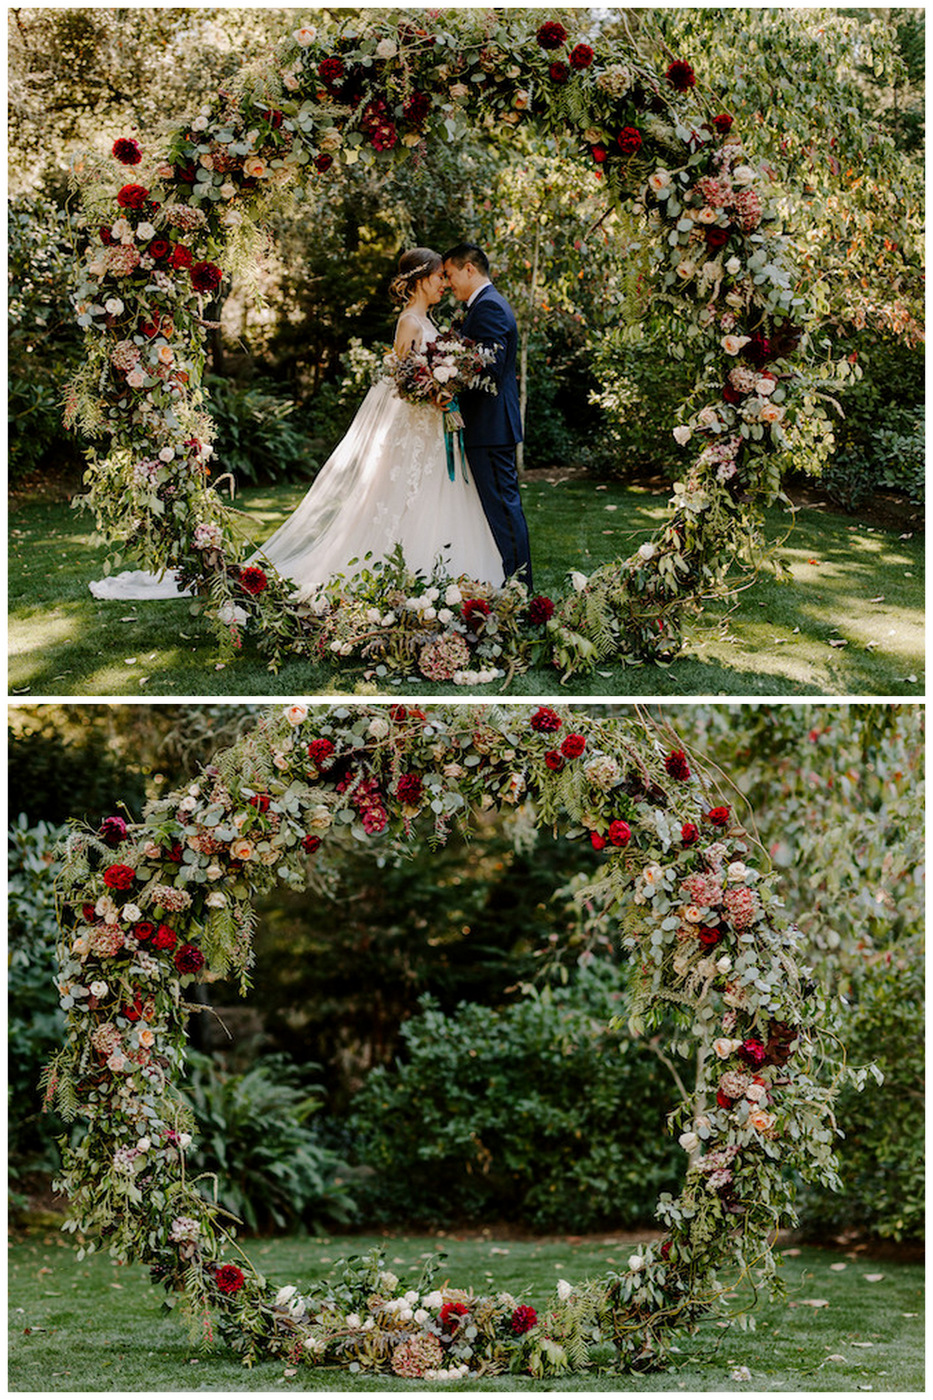 Enchanted Garden Wedding in Modern, Romantic Jewel Tones